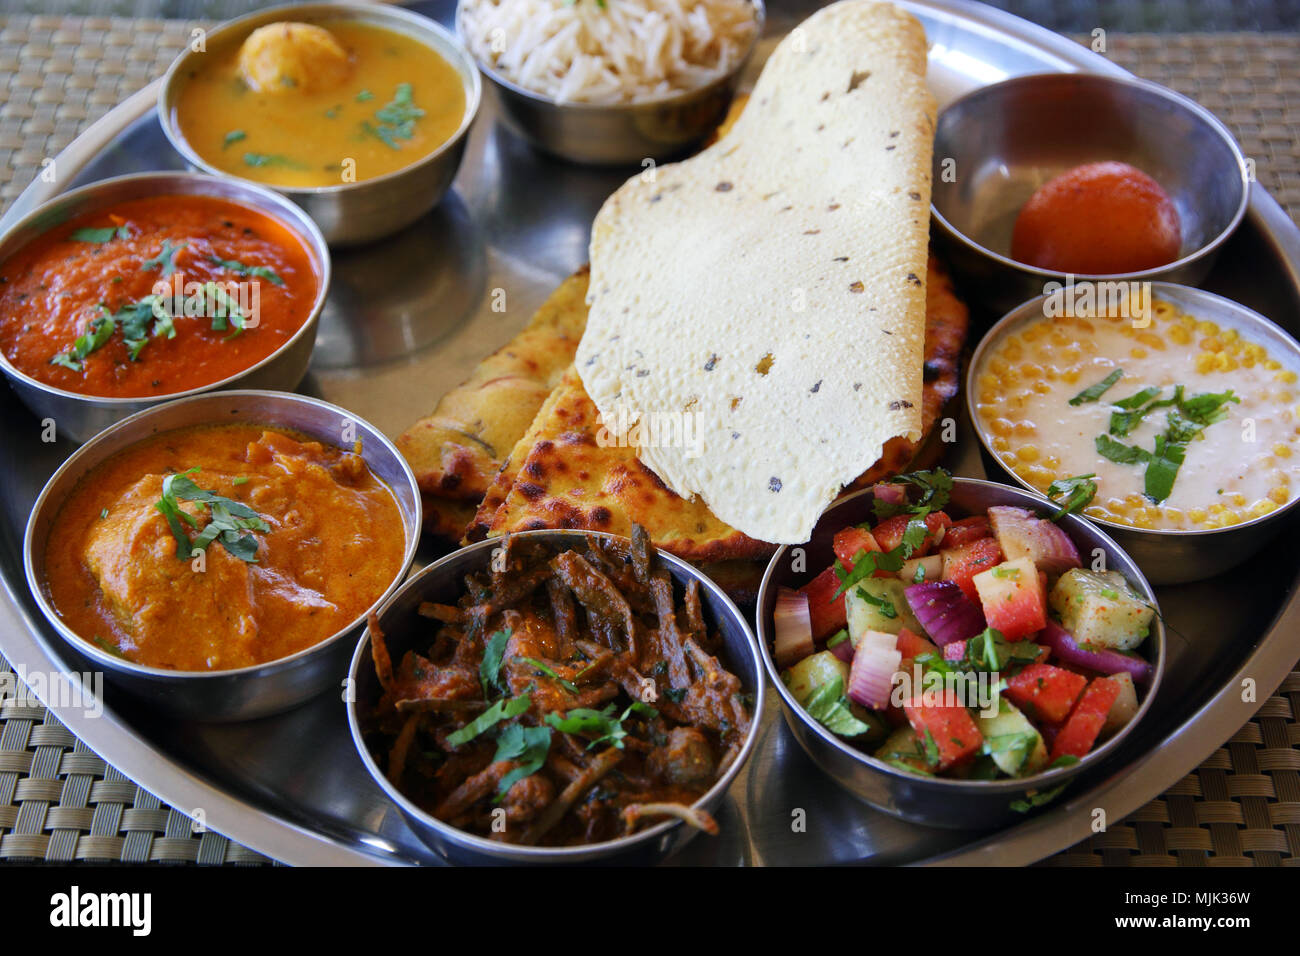 La nourriture indienne typique de Jaipur - Rajasthan thali Banque D'Images